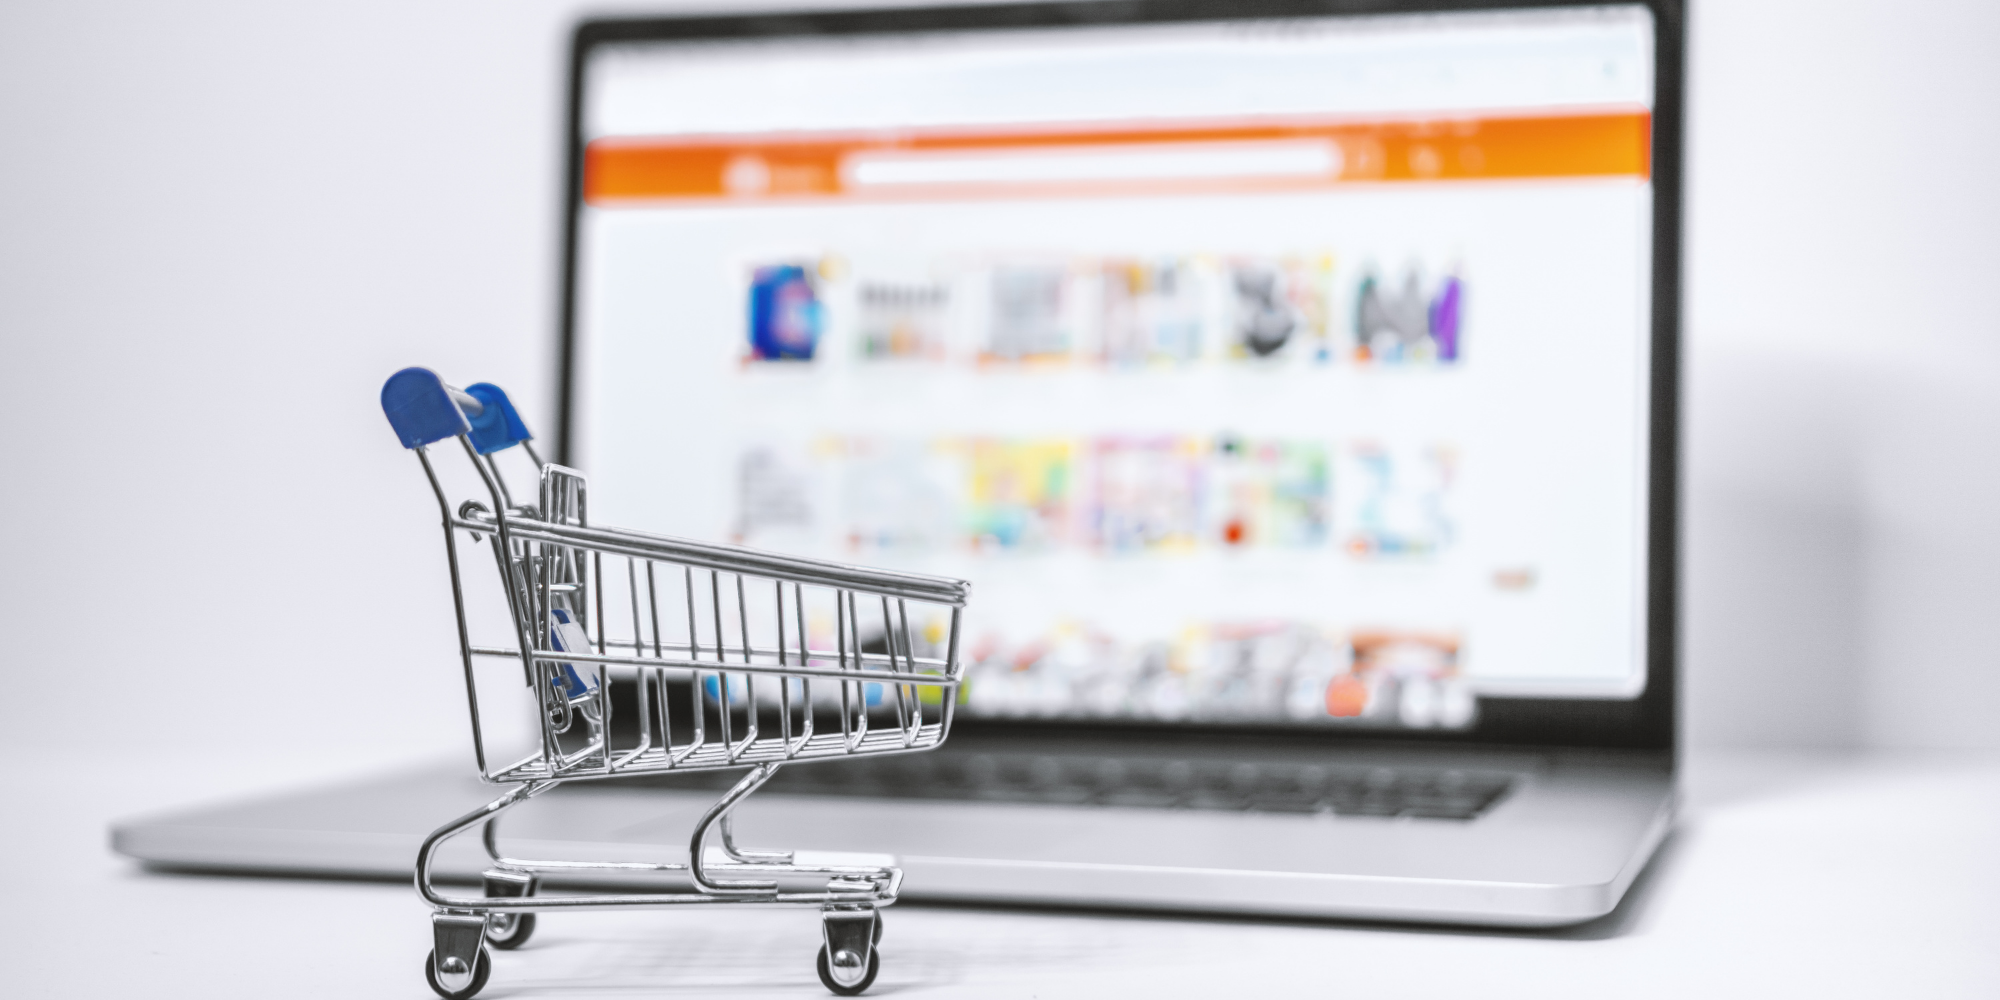  E-ticaret online alışveriş sitesi önünde alışveriş sepeti objesi.